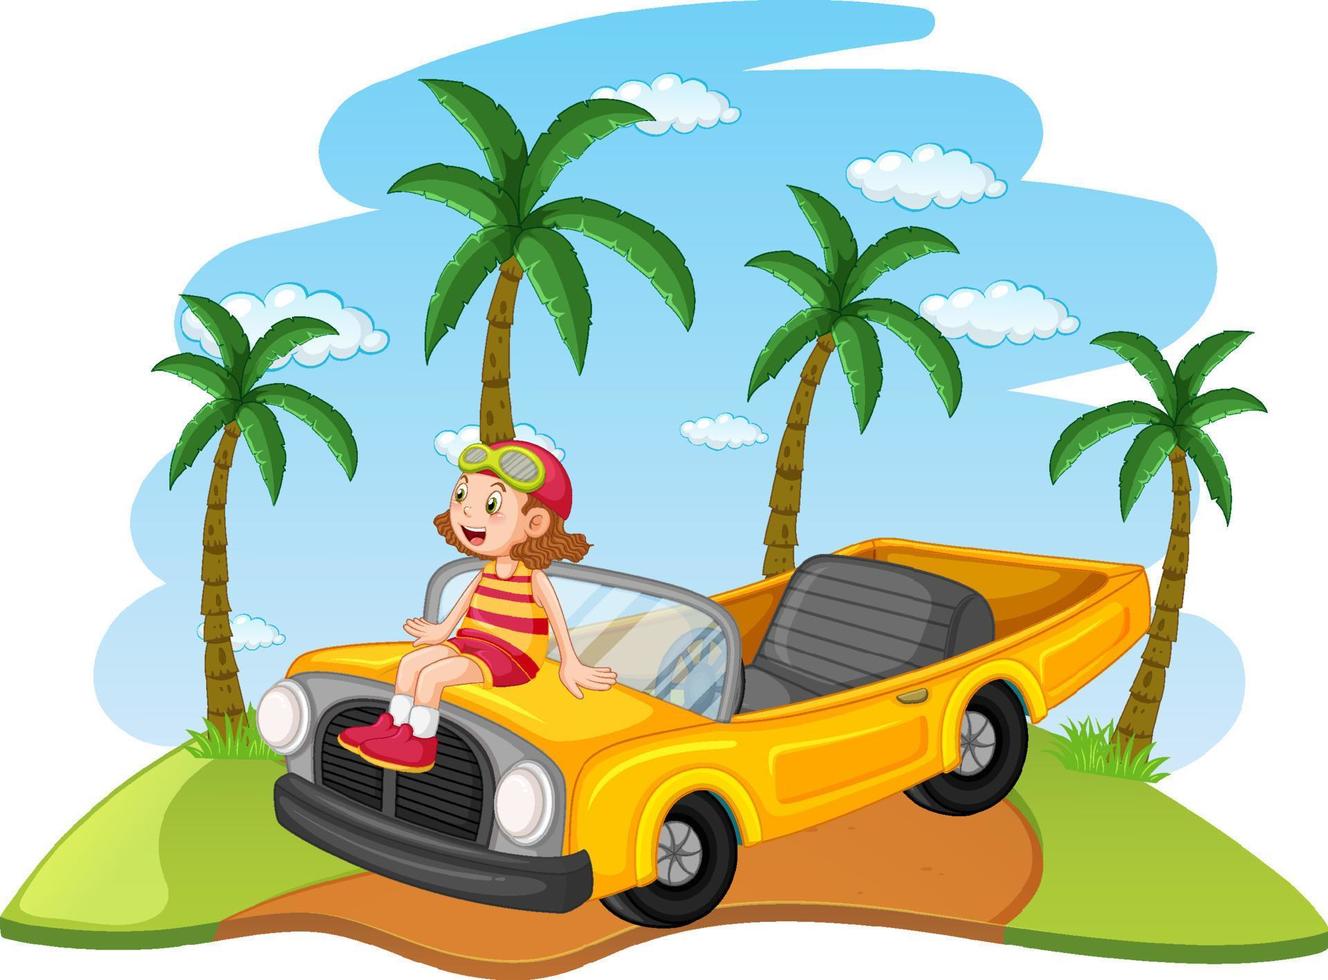 road trip-konzept mit kindern, die klassisches cabrio-auto fahren vektor